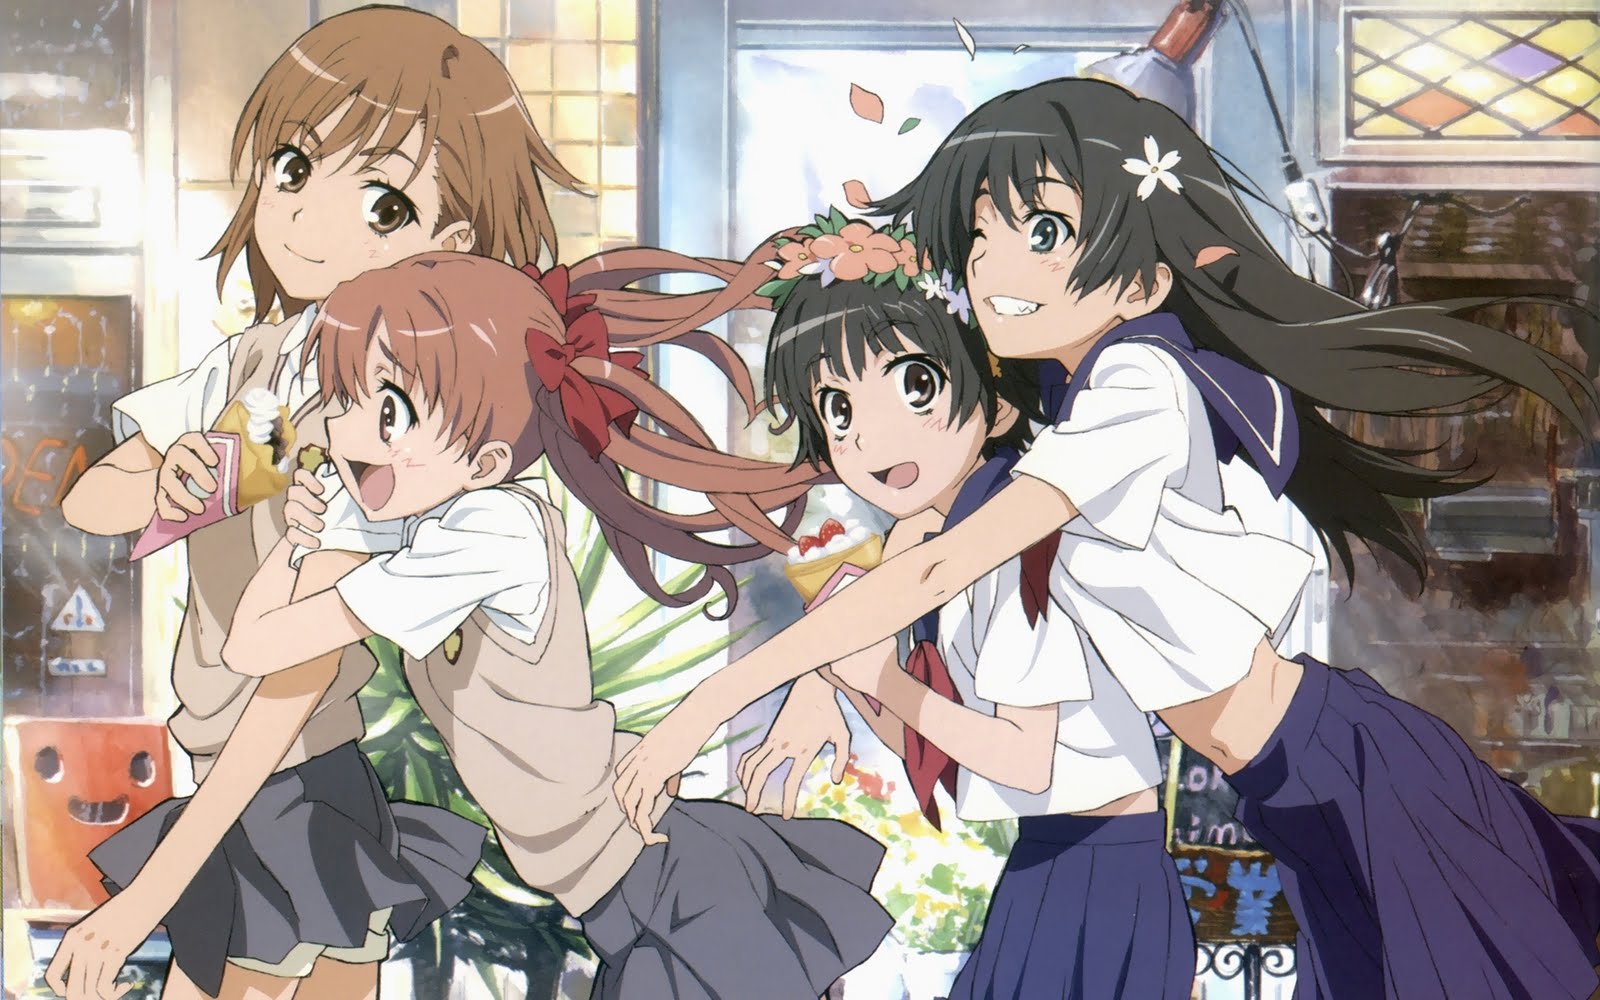 Kono - Ai - Setsu  - fonte para yuri, shoujo-ai e girls love desde 2007:  [Notícia] Mangás com clima fofo entre garotas ganham anime